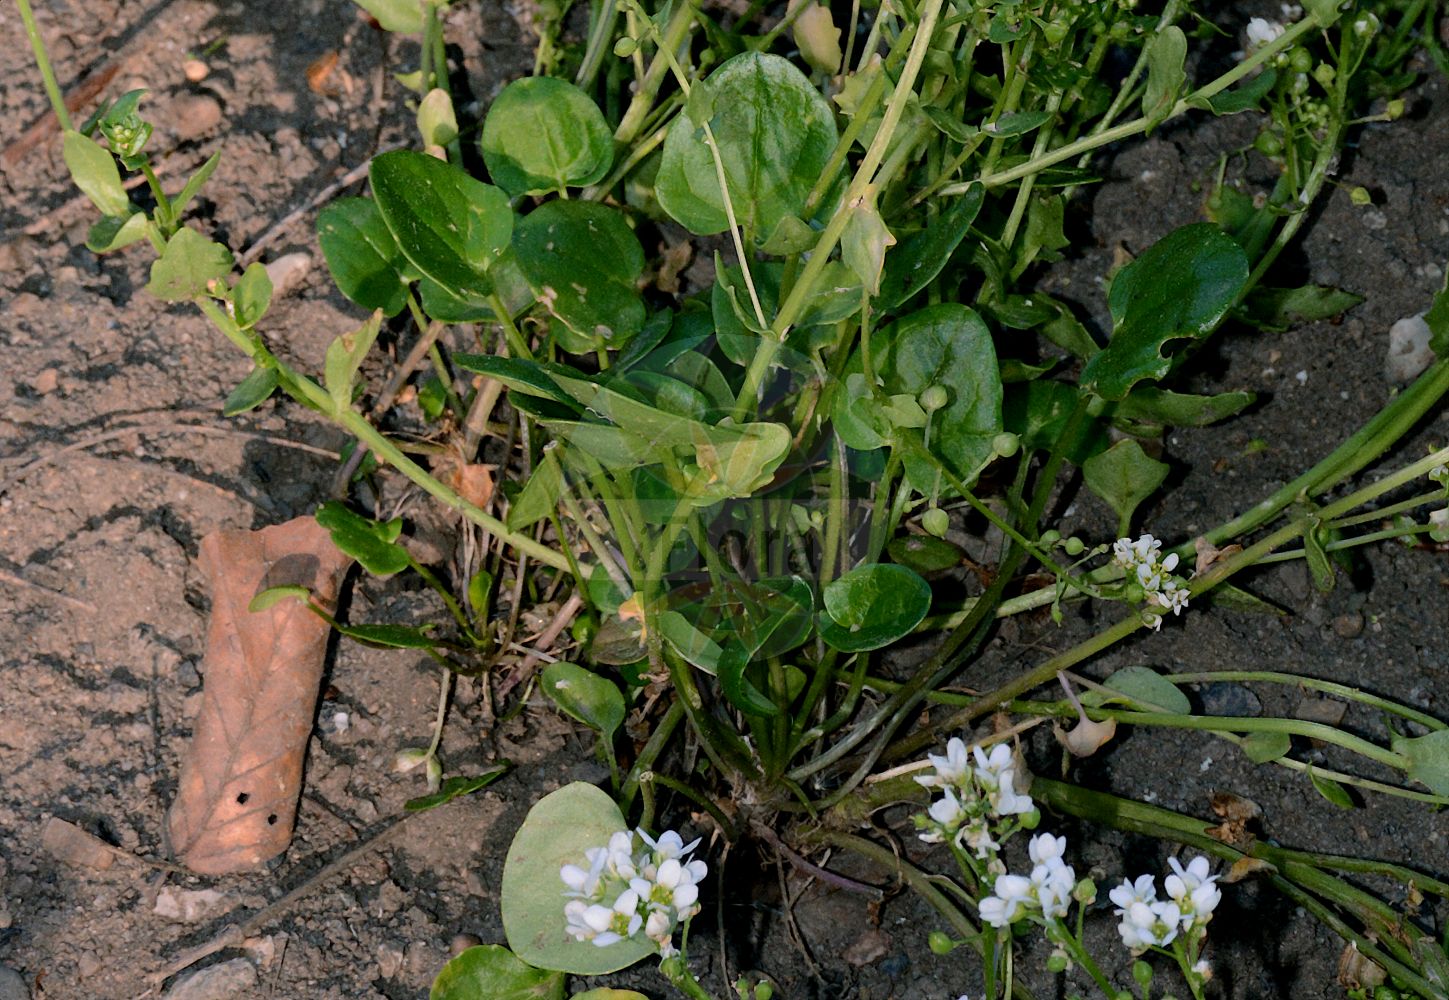 Foto von Cochlearia officinalis (Gewöhnliches Löffelkraut - Common Scurvygrass). Das Foto wurde in Giessen, Hessen, Deutschland aufgenommen. ---- Photo of Cochlearia officinalis (Gewöhnliches Löffelkraut - Common Scurvygrass). The picture was taken in Giessen, Hesse, Germany.(Cochlearia officinalis,Gewöhnliches Löffelkraut,Common Scurvygrass,Cochlearia officinalis,Gewoehnliches Loeffelkraut,Echtes Loeffelkraut,Echtes Loeffelkraut,Gebraeuchliches Loeffelkraut,Common Scurvygrass,Danish Scurvygrass,Common & Long-leaved Scurvygrass,Scorbute Grass,Scurvygrass,Spoonwort,Cochlearia,Löffelkraut,Scurvygrass,Brassicaceae,Kreuzblütler,Cabbage family)